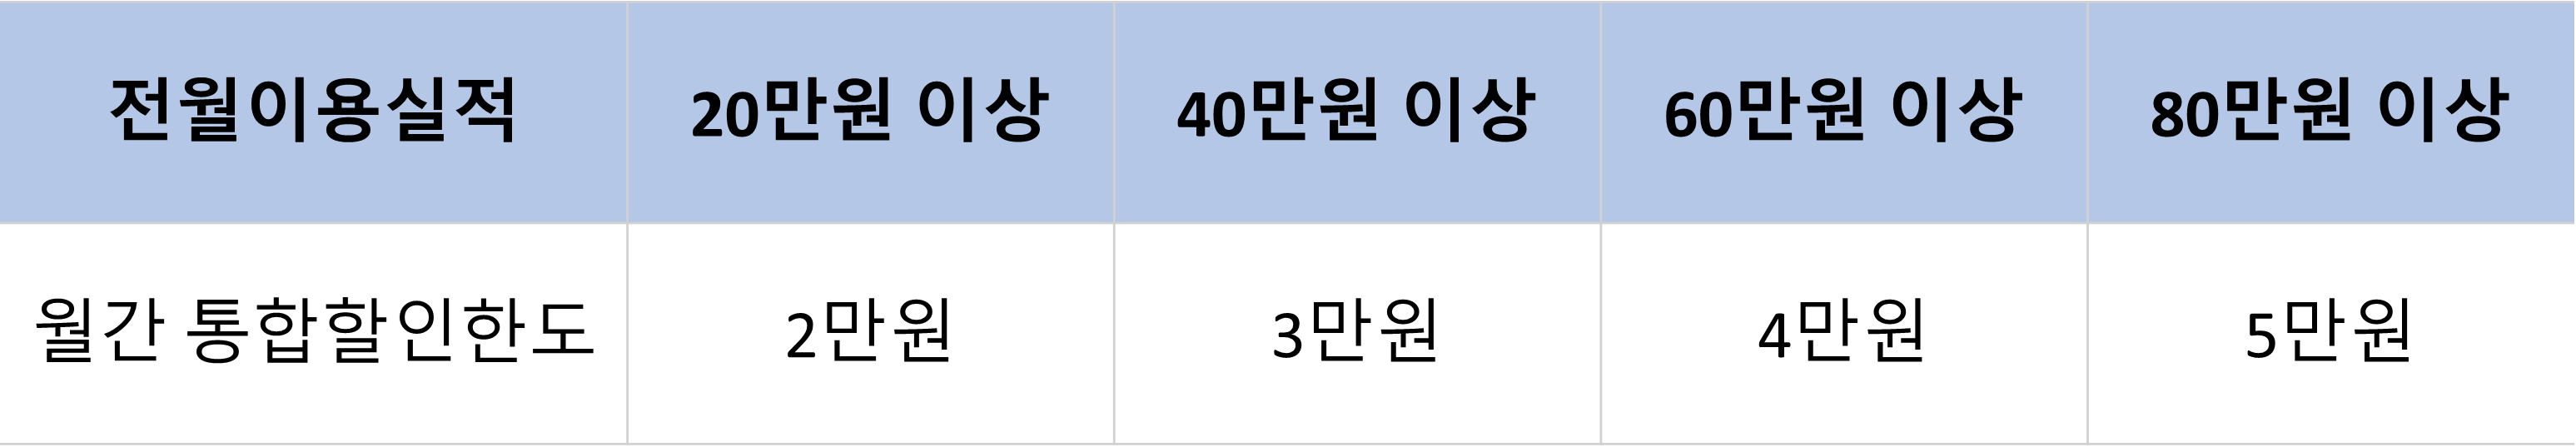 KB국민카드 노리2 체크카드 전월 실적 구간